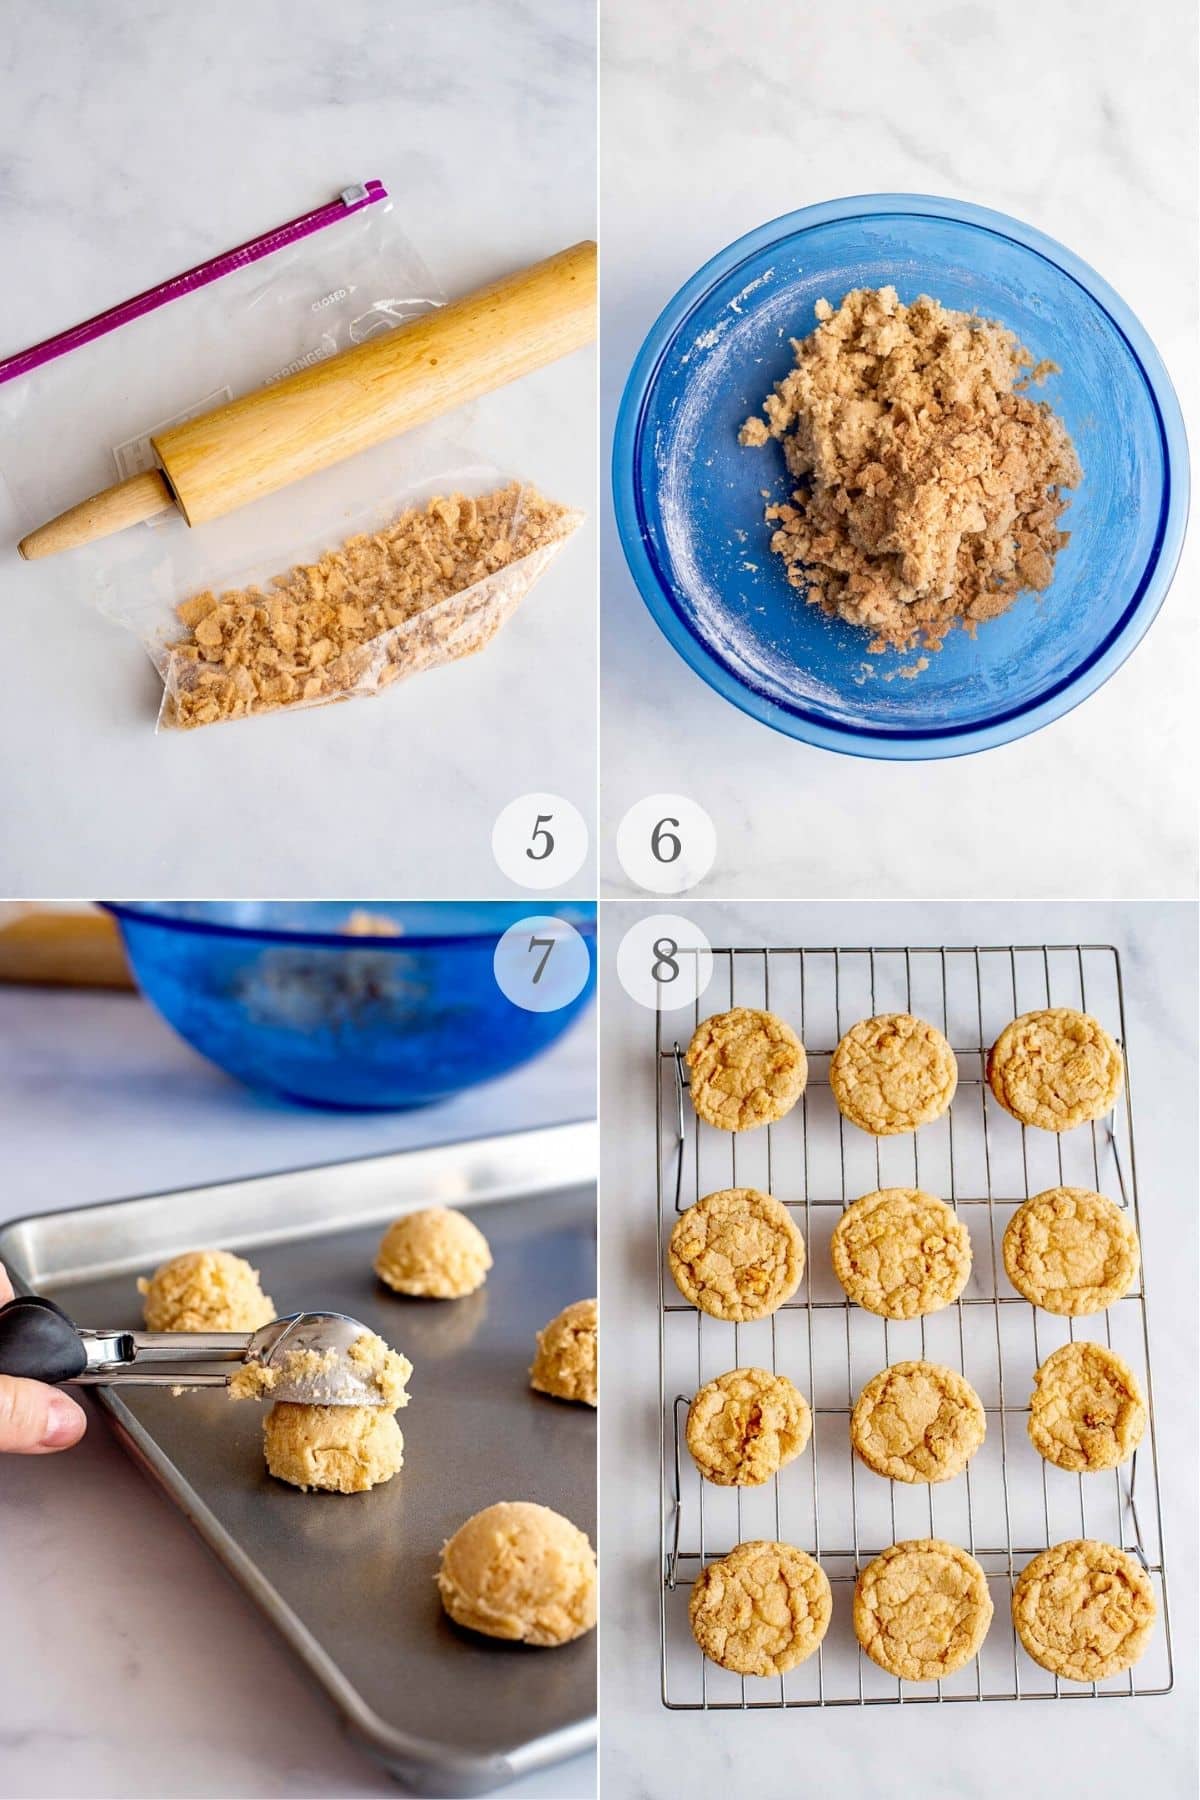 cinnamon toast crunch cookies recipe steps 5-8.